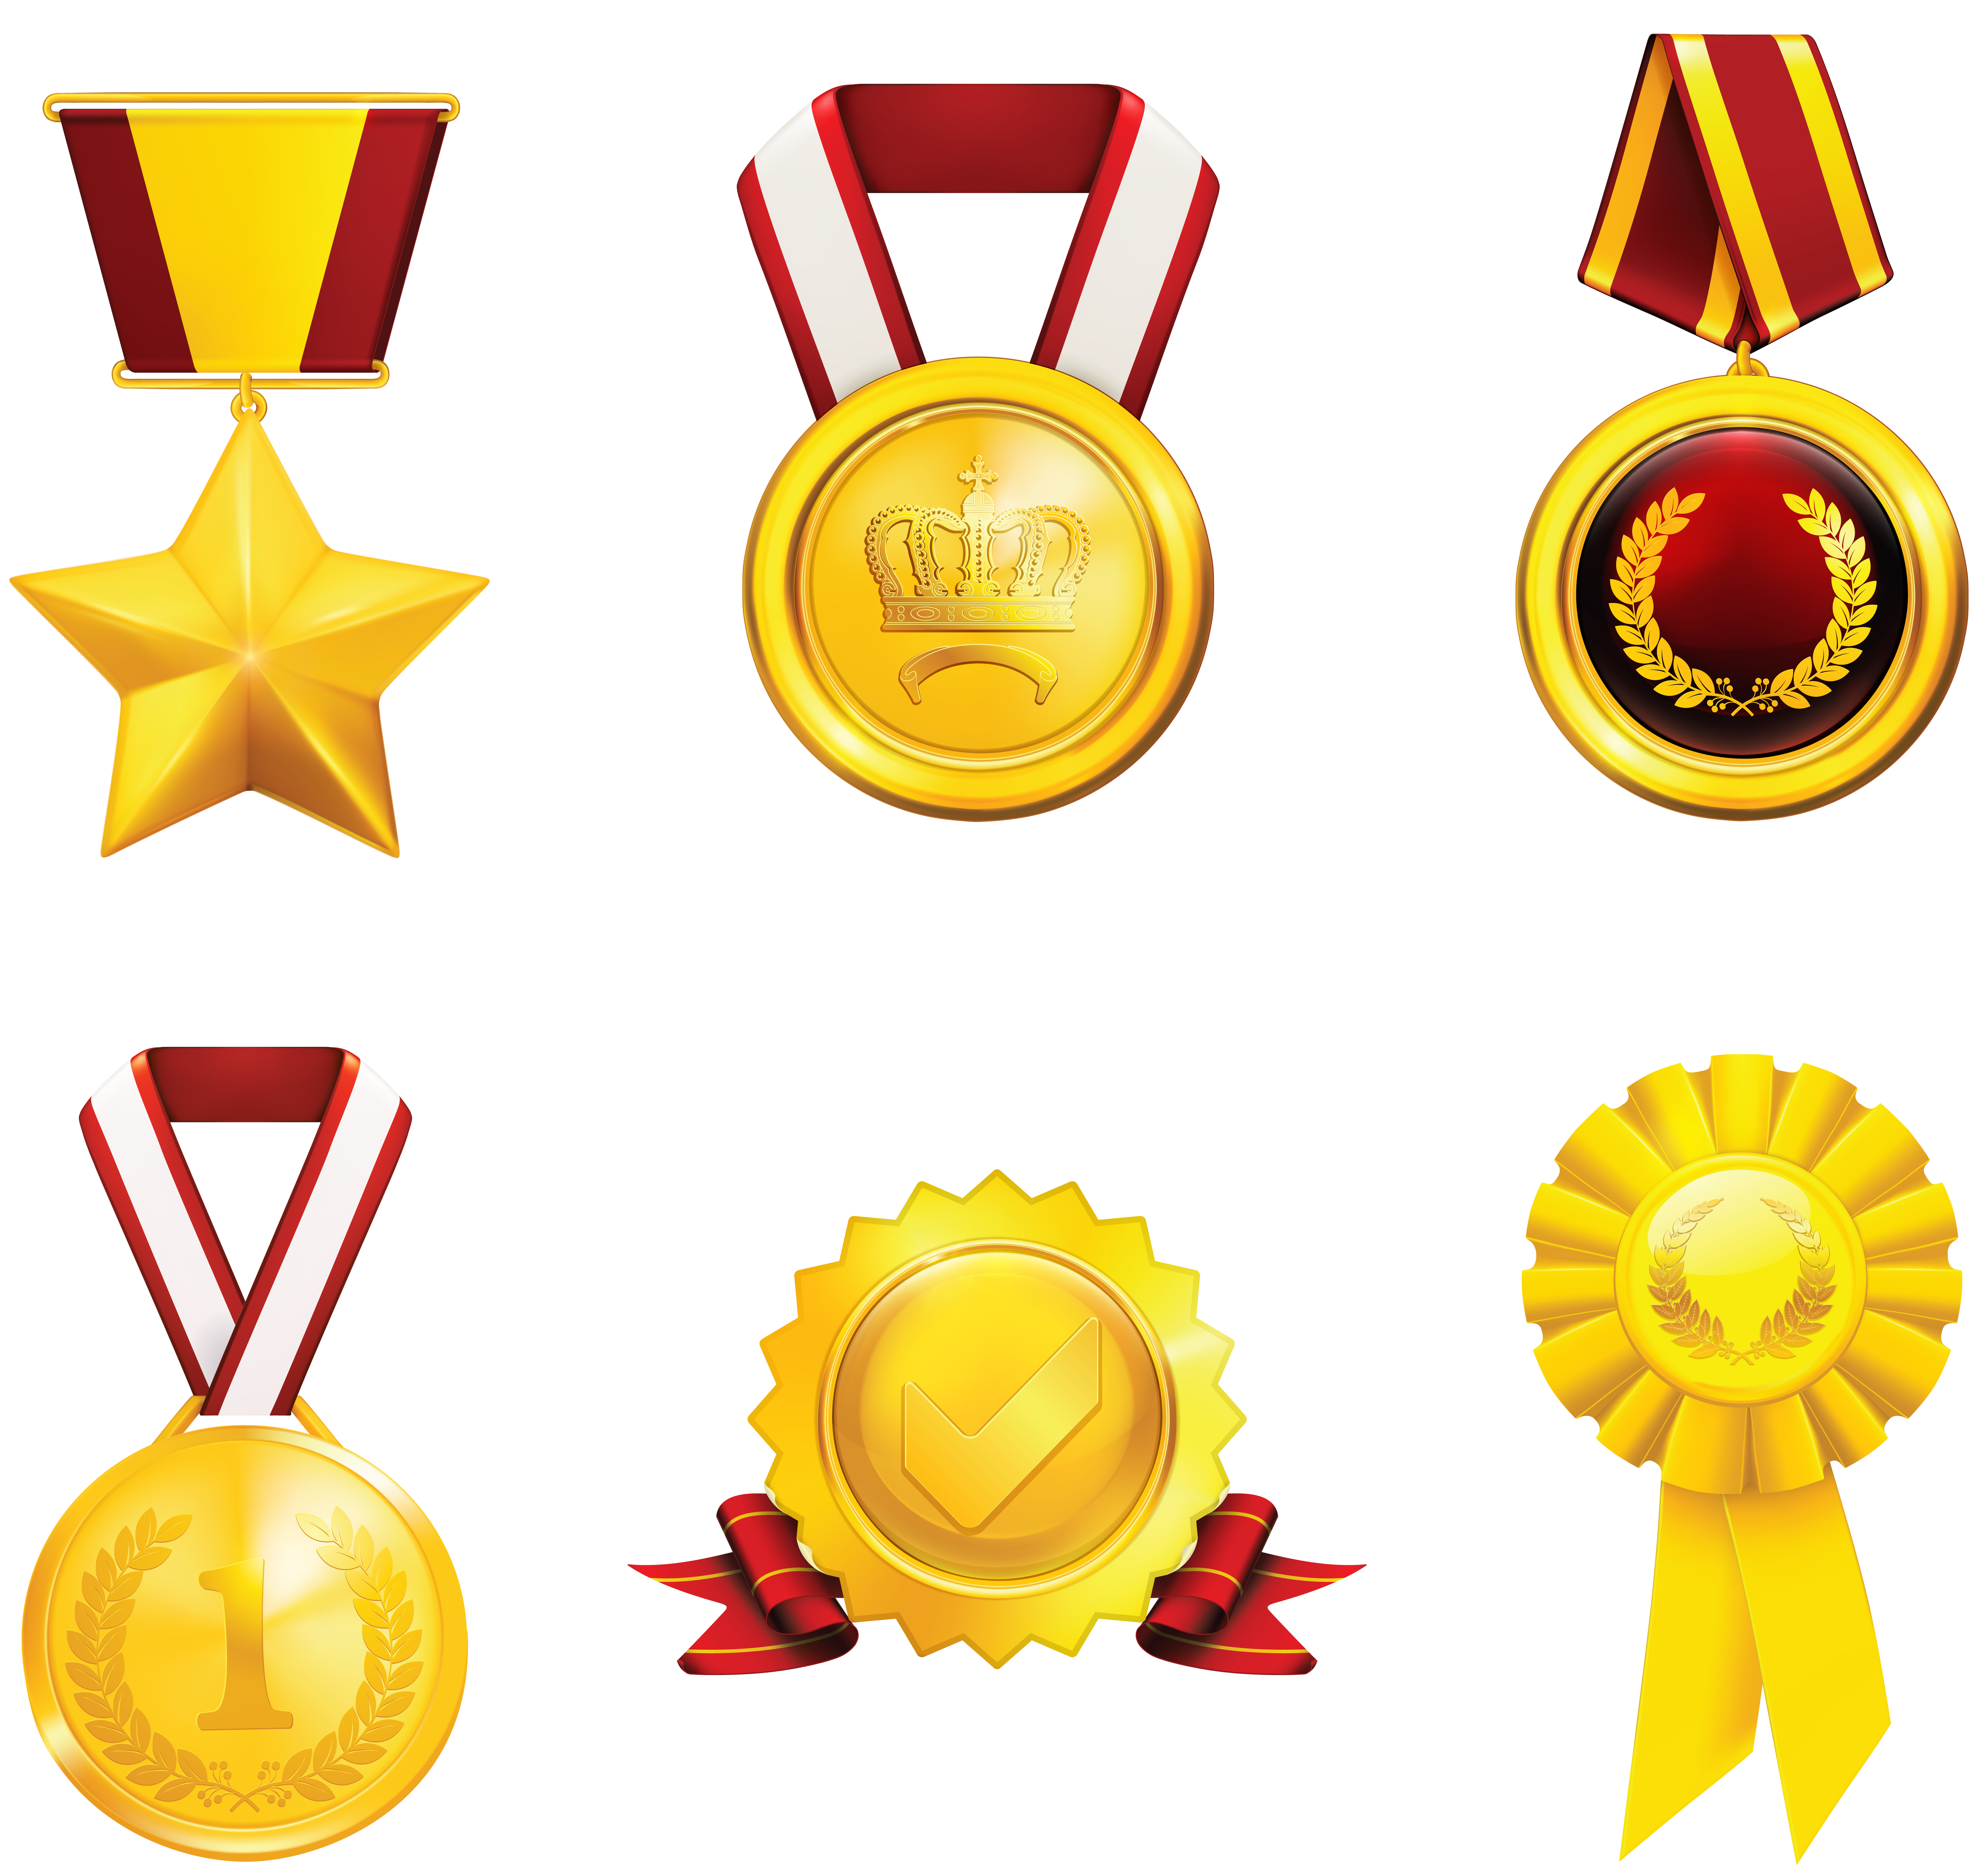 Premi, medaglie